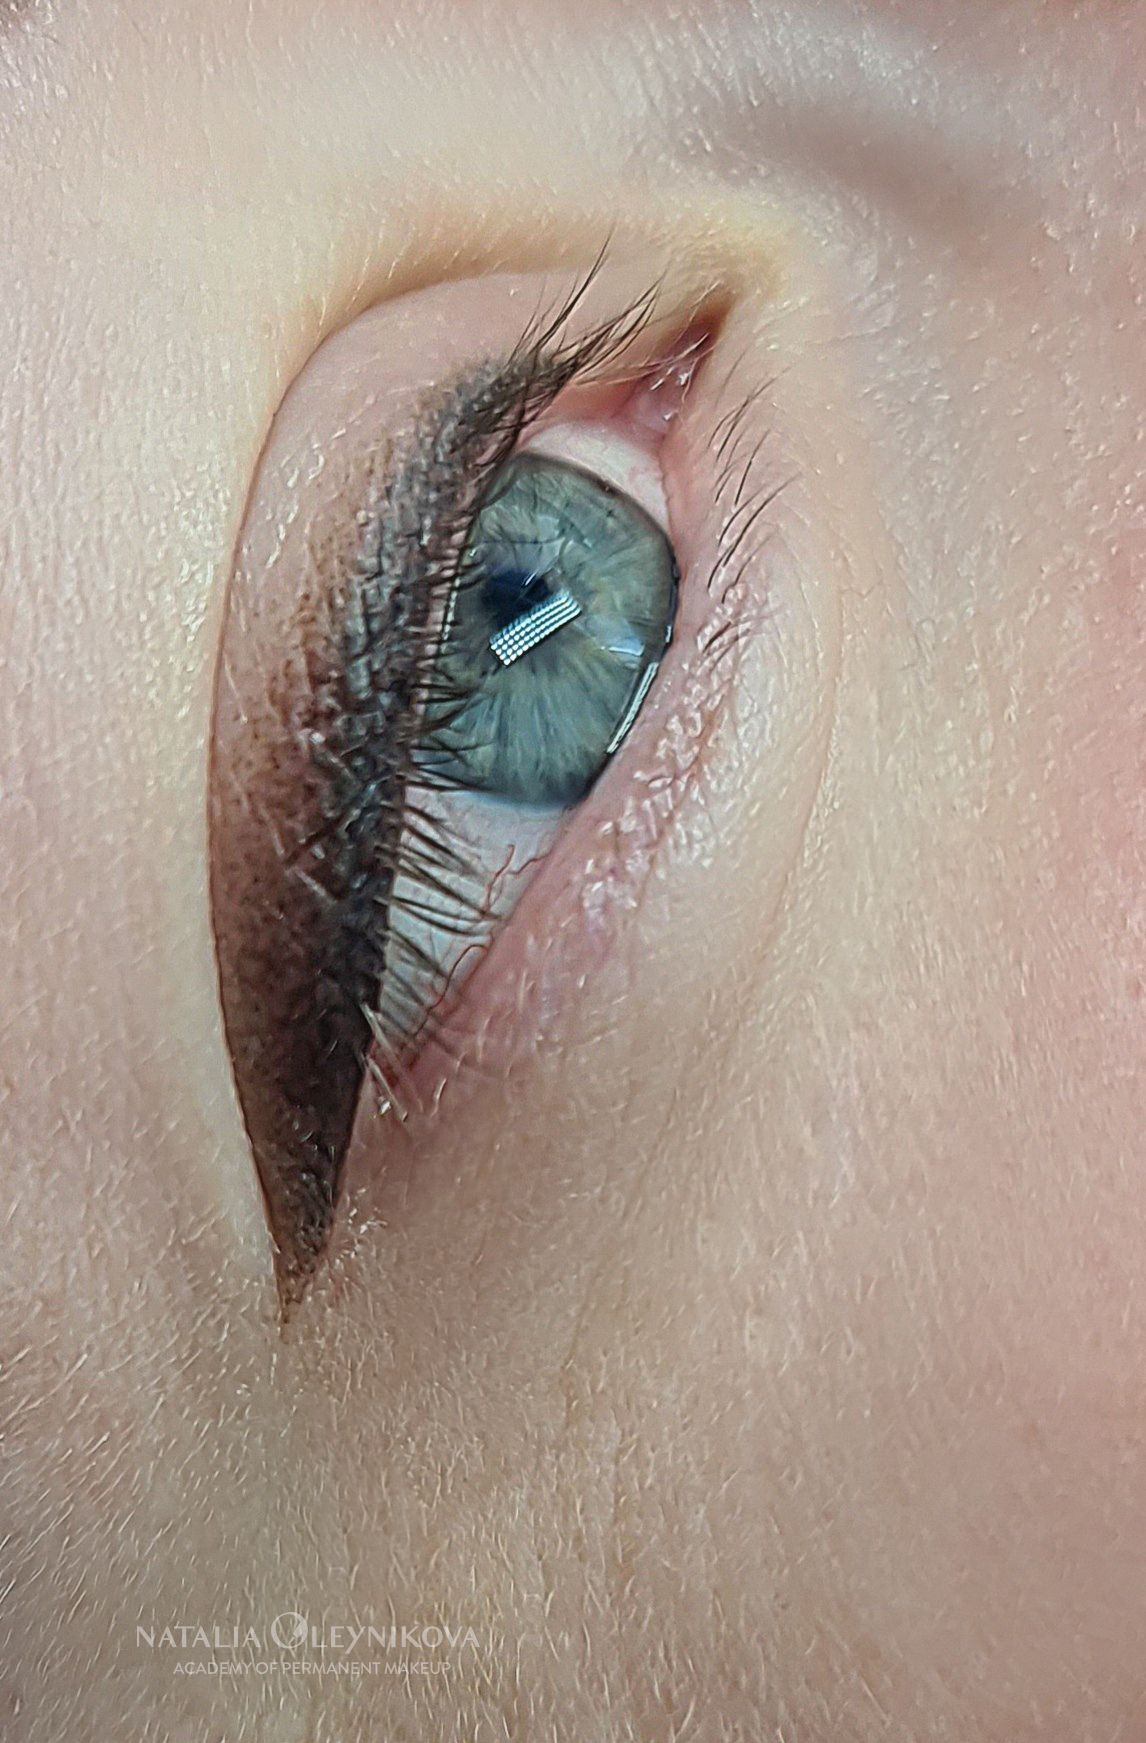 Татуаж глаз. Стрелка с растушевкой 29102020 © Академия татуажа Натальи Олейниковой